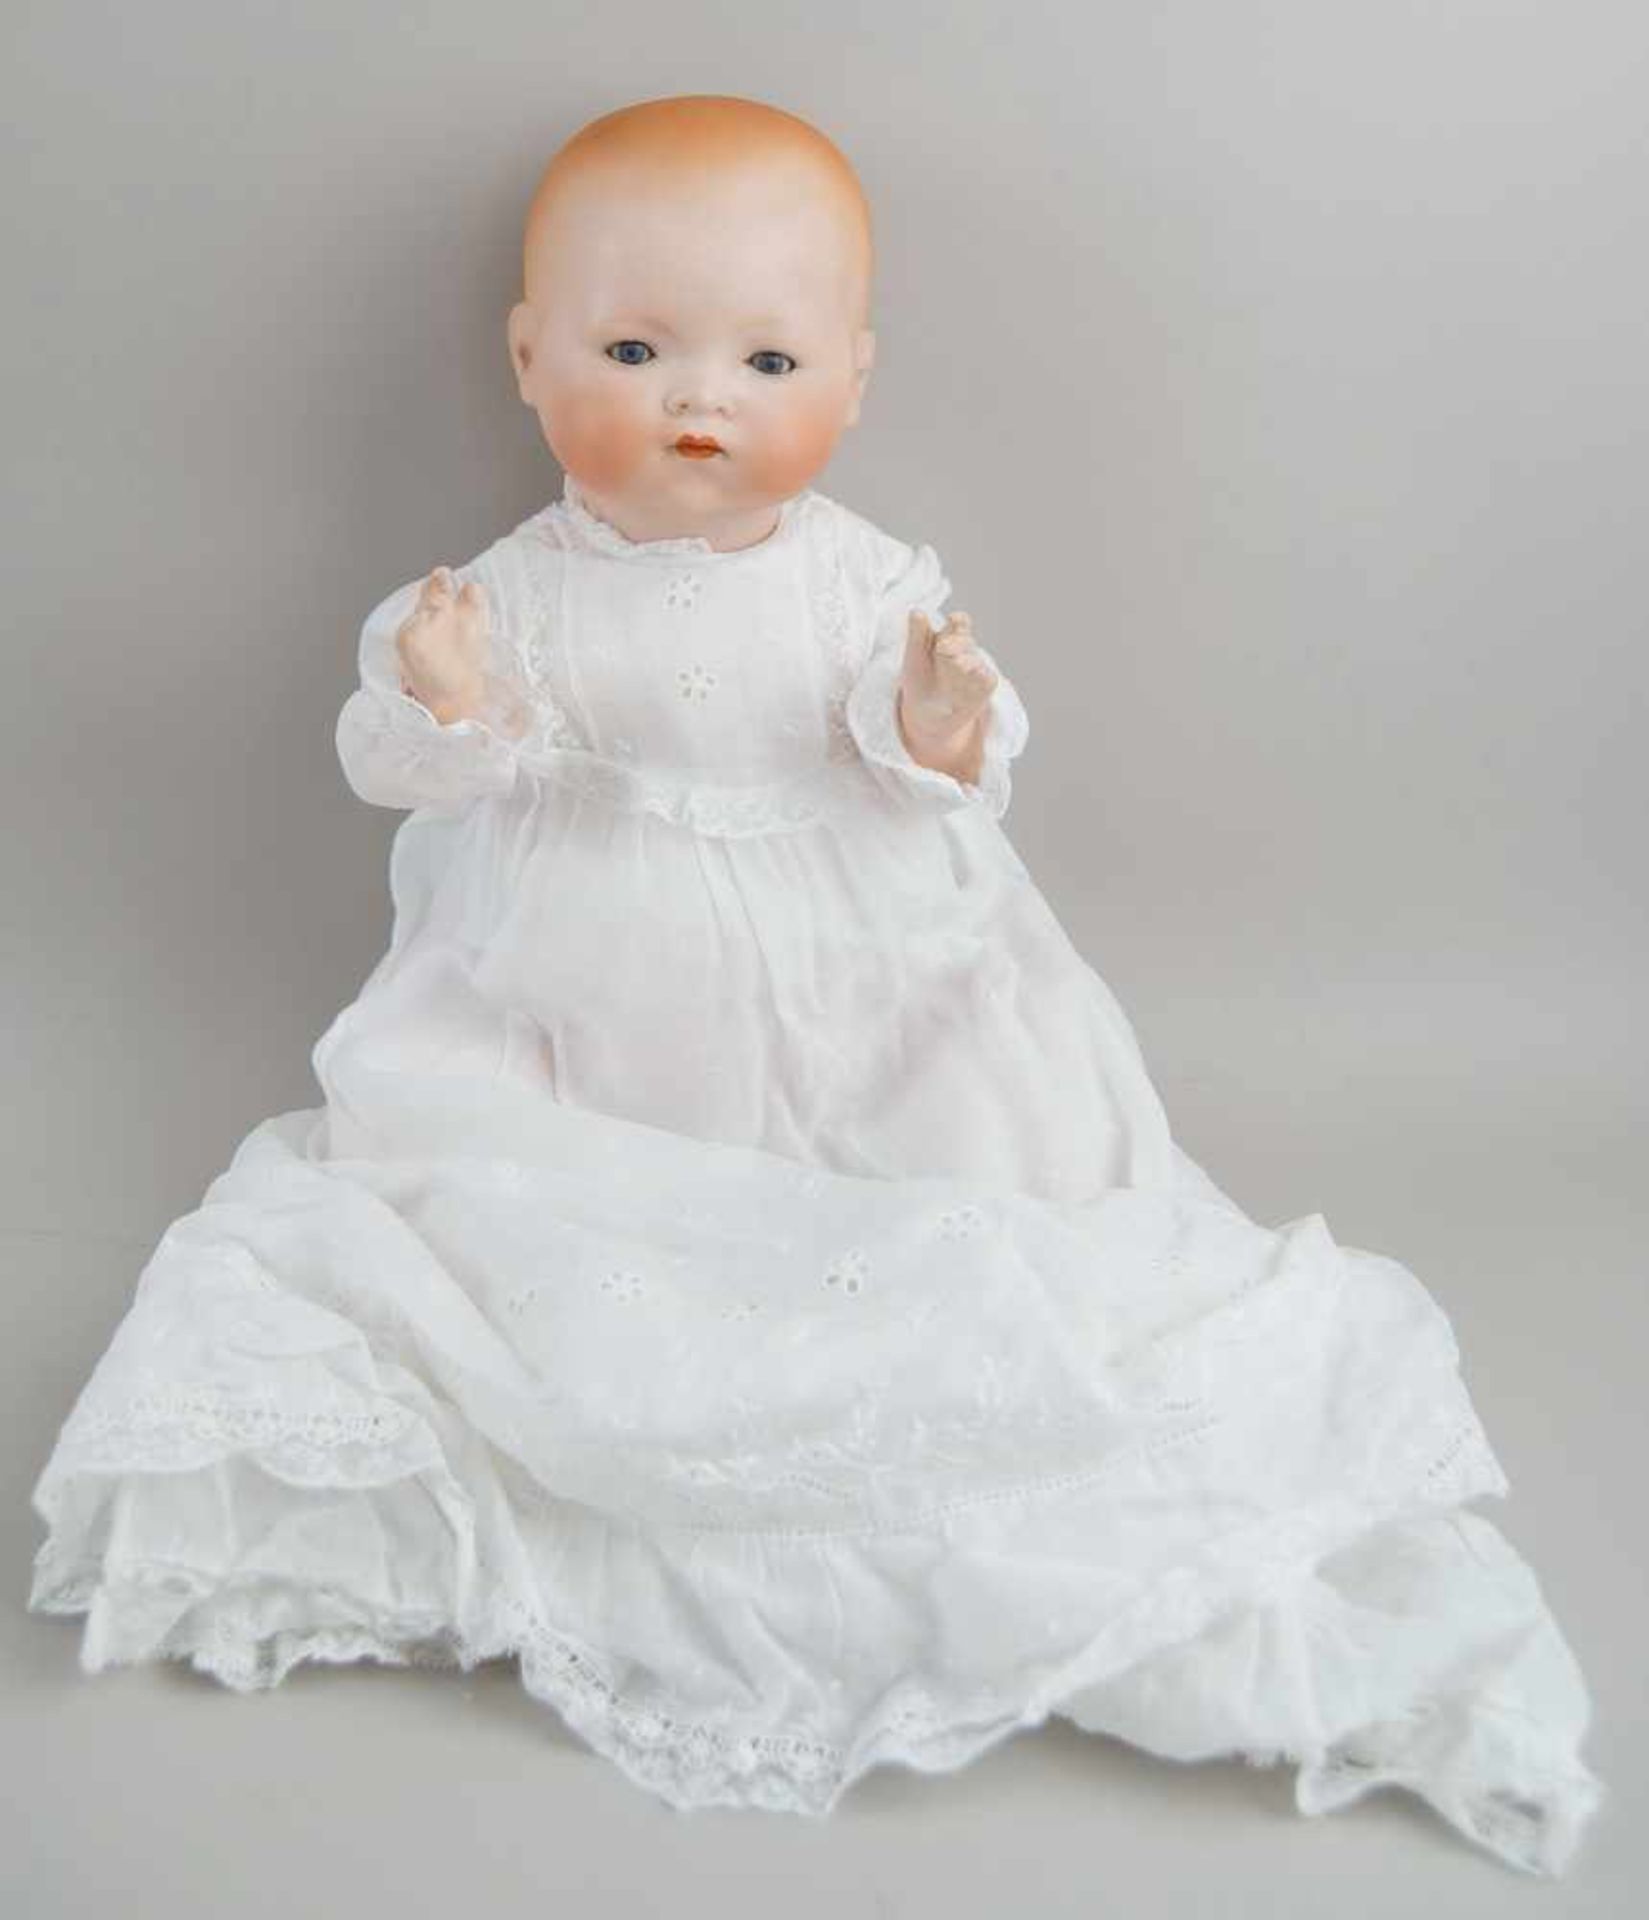 Puppe Armand Marseille 341, Dream Baby mit Schlafkissen, 1926, bespielt, 43cm- - -24.00 % buyer's